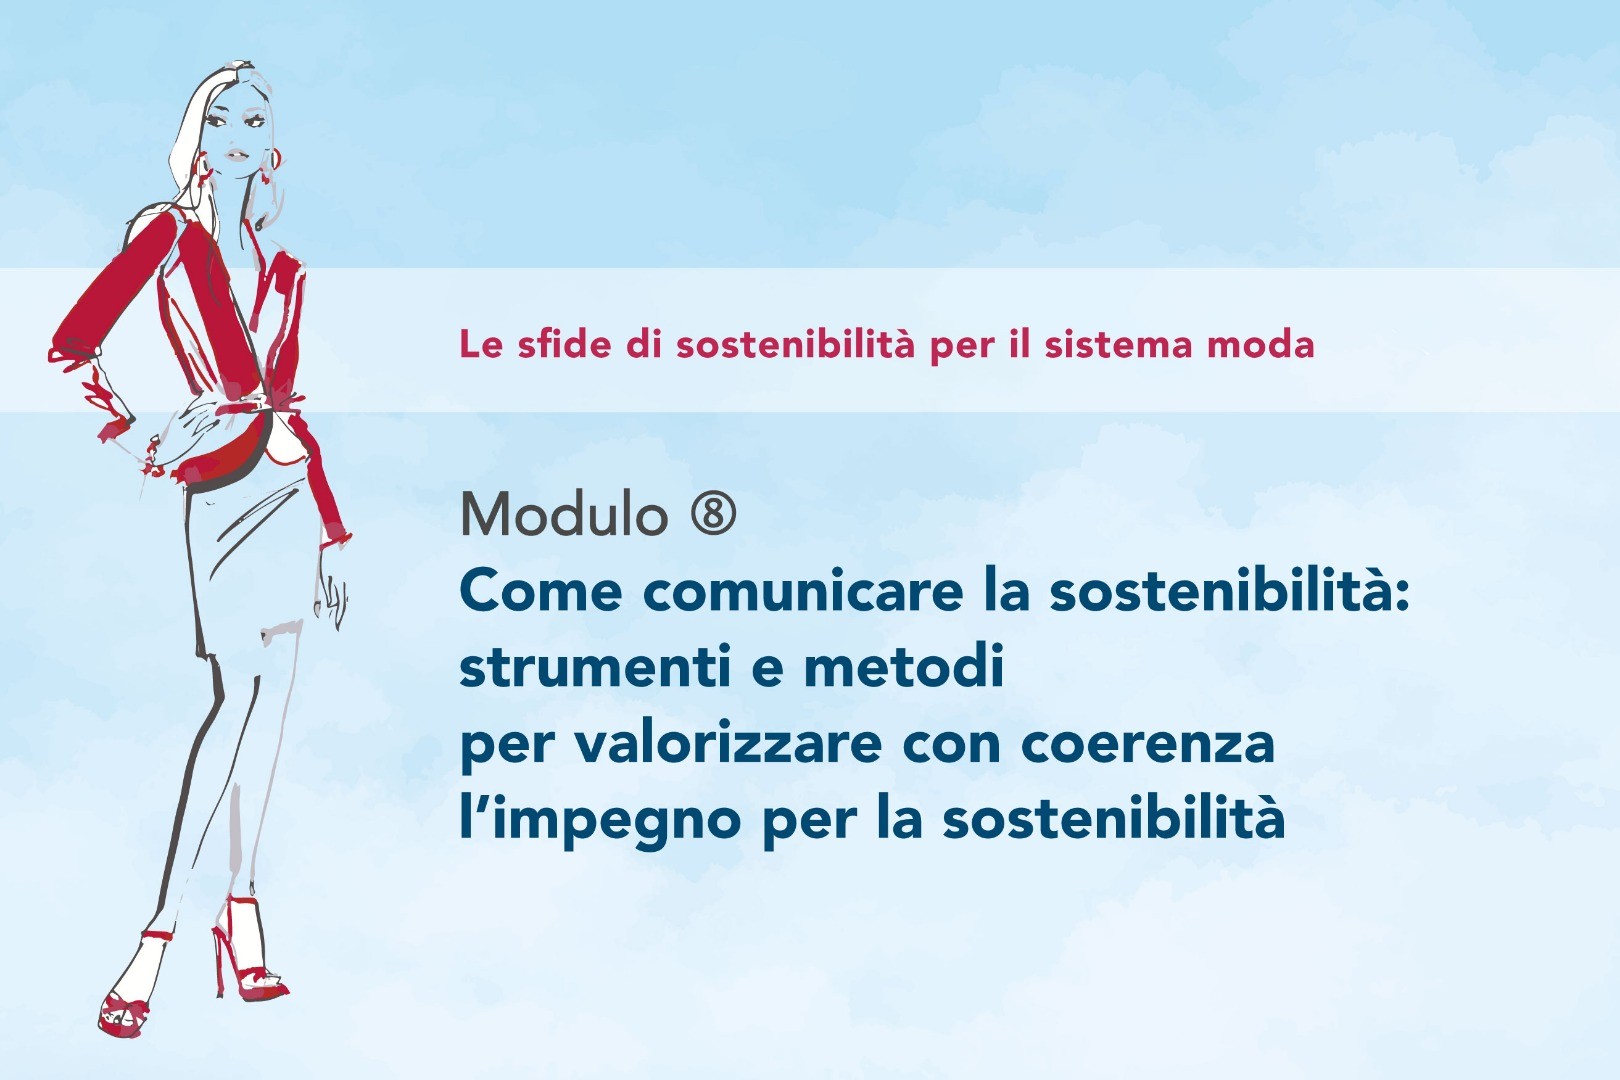 Modulo 8 - Come comunicare la sostenibilità: strumenti e metodi per valorizzare con coerenza l’impegno e la sostenibilità